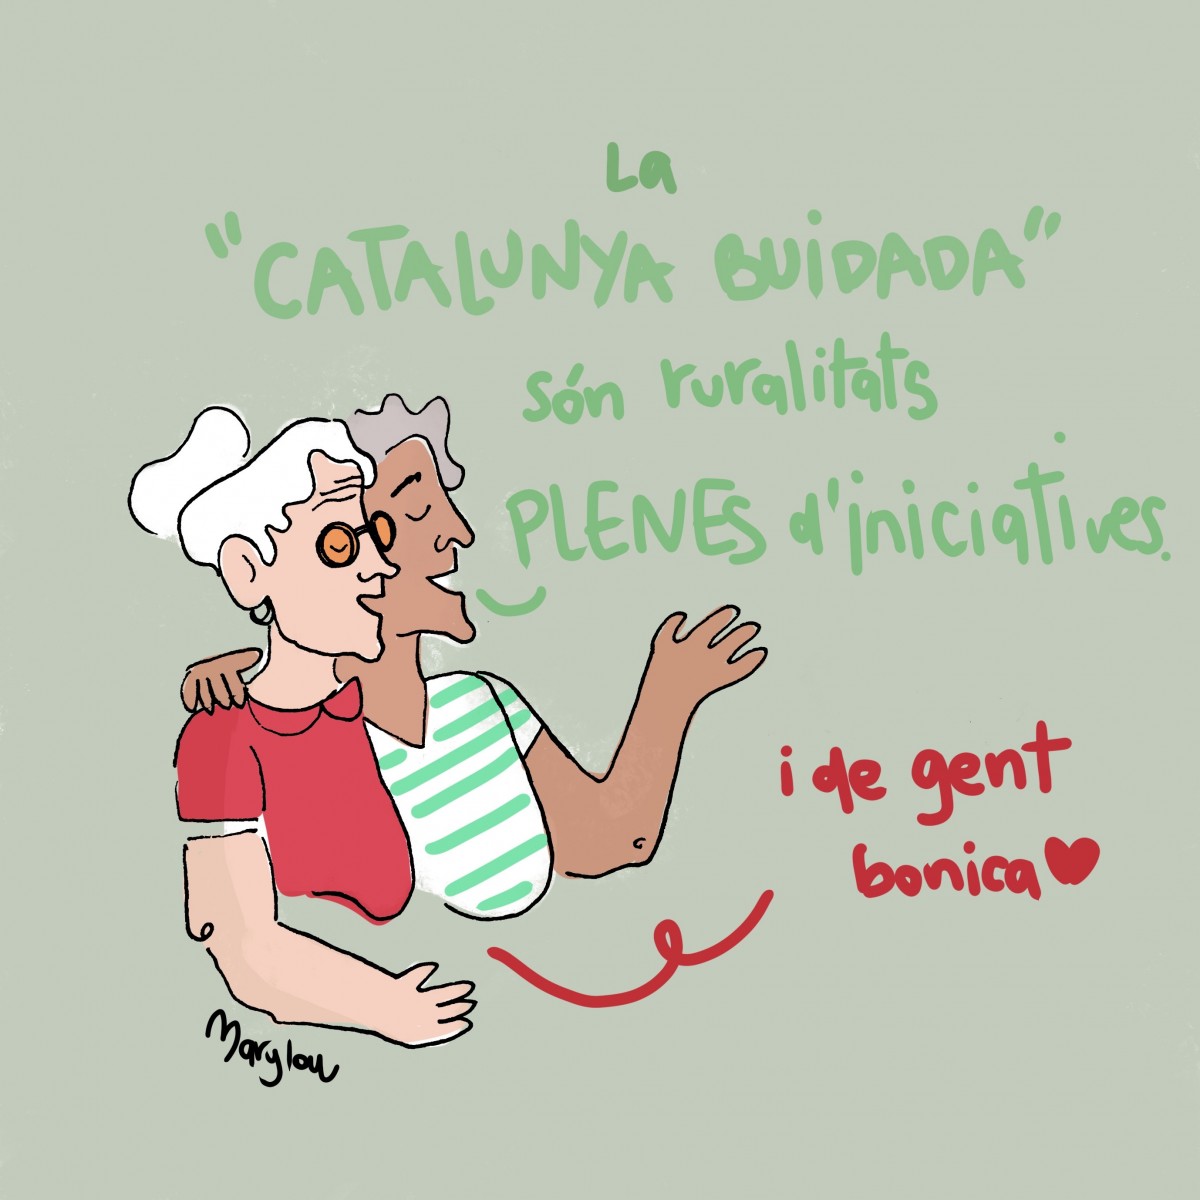 Davant els que parlen de «Catalunya buidada», prefereixen parlant de la gent bonica i amb iniciatives del món rural